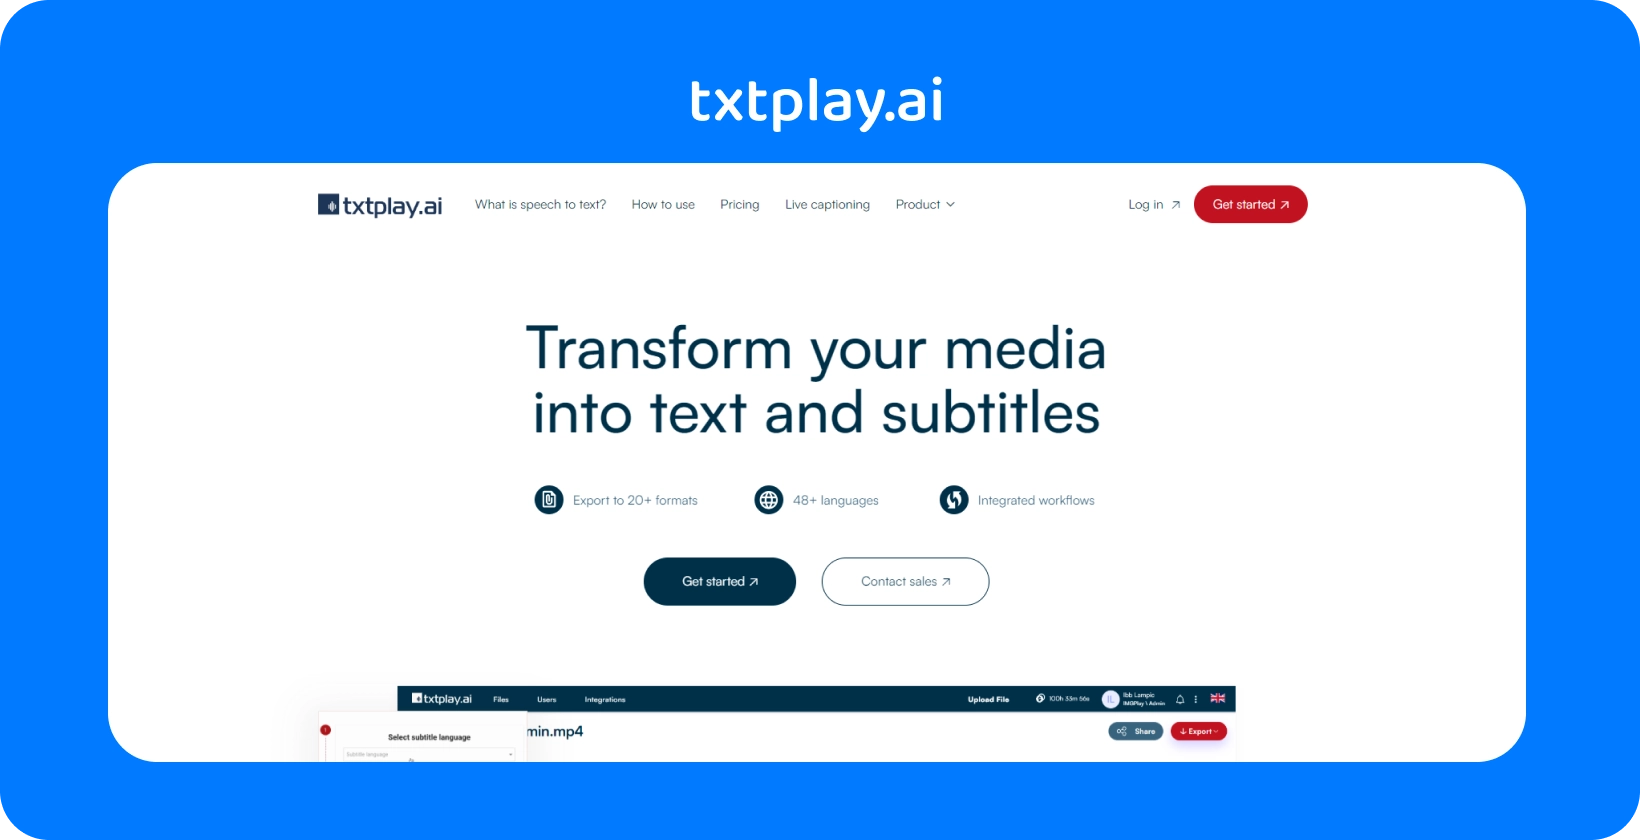 Przekształć multimedia w tekst i napisy za pomocą txtplay.ai, obsługując 48+ języków i 20+ formatów.